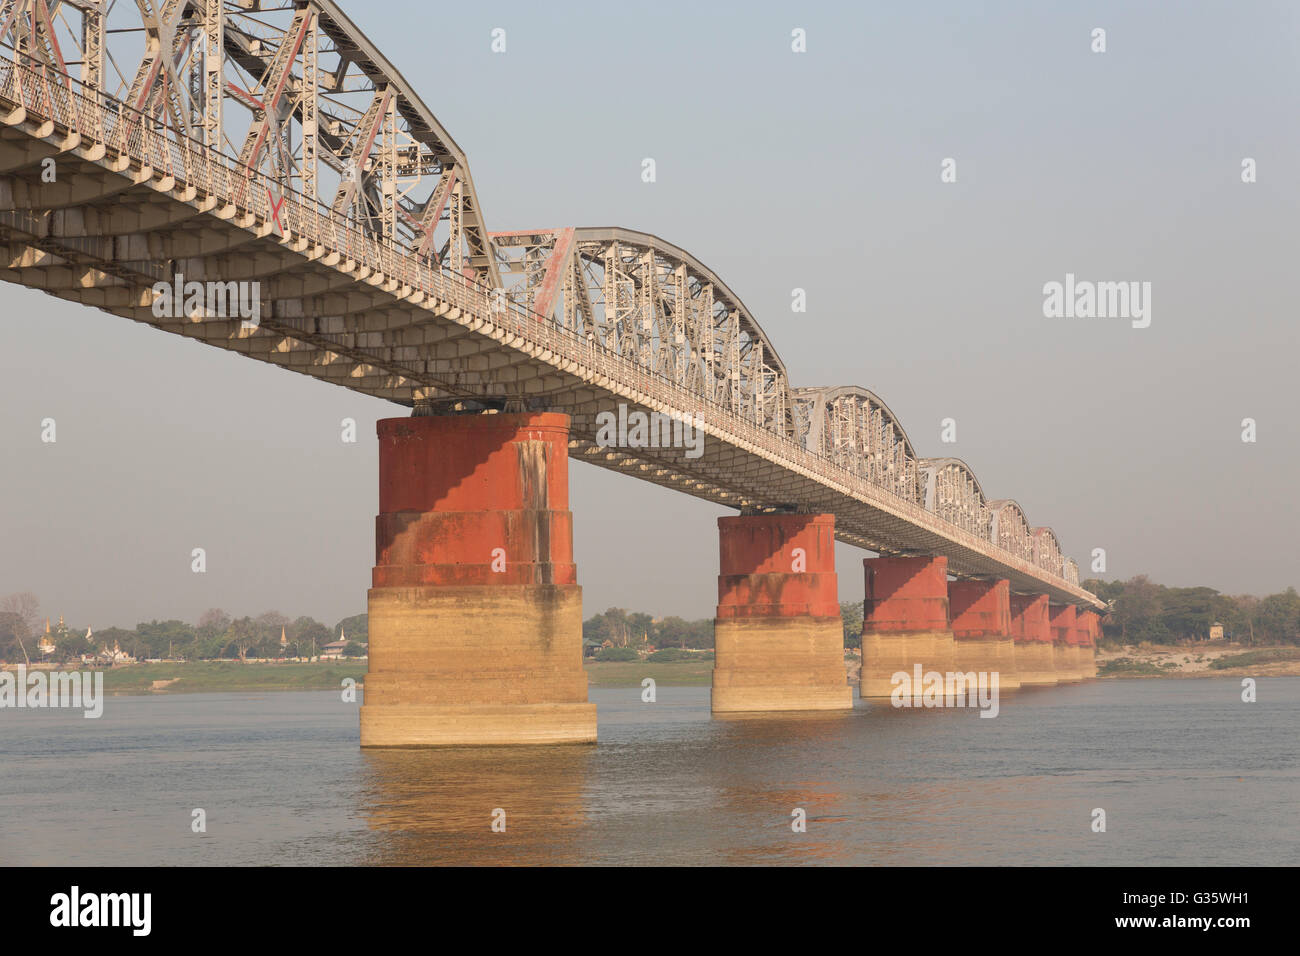 Bridge, boats and ferries between Bagan and Mandalay along the Irrawaddy river (Ayeyarwady river), Burma, Myanmar, South Asia Stock Photo